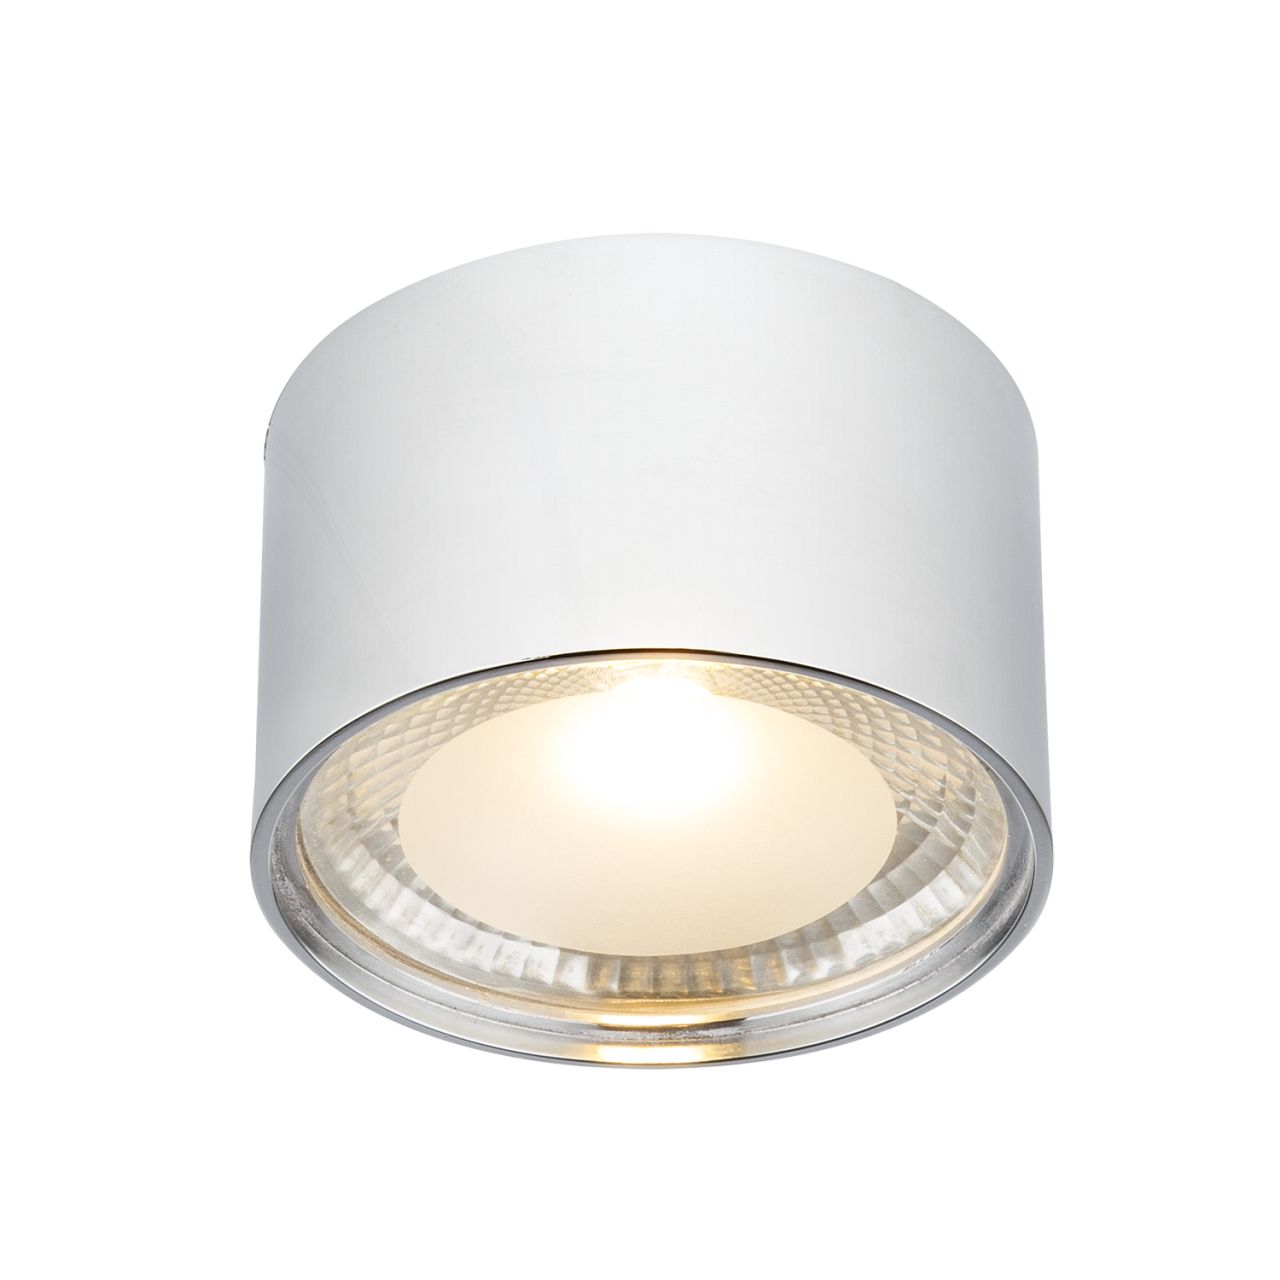 LED Decken Lampe Wohn Zimmer Glas weiß Strahler Leuchte klar satiniert Zylinder 